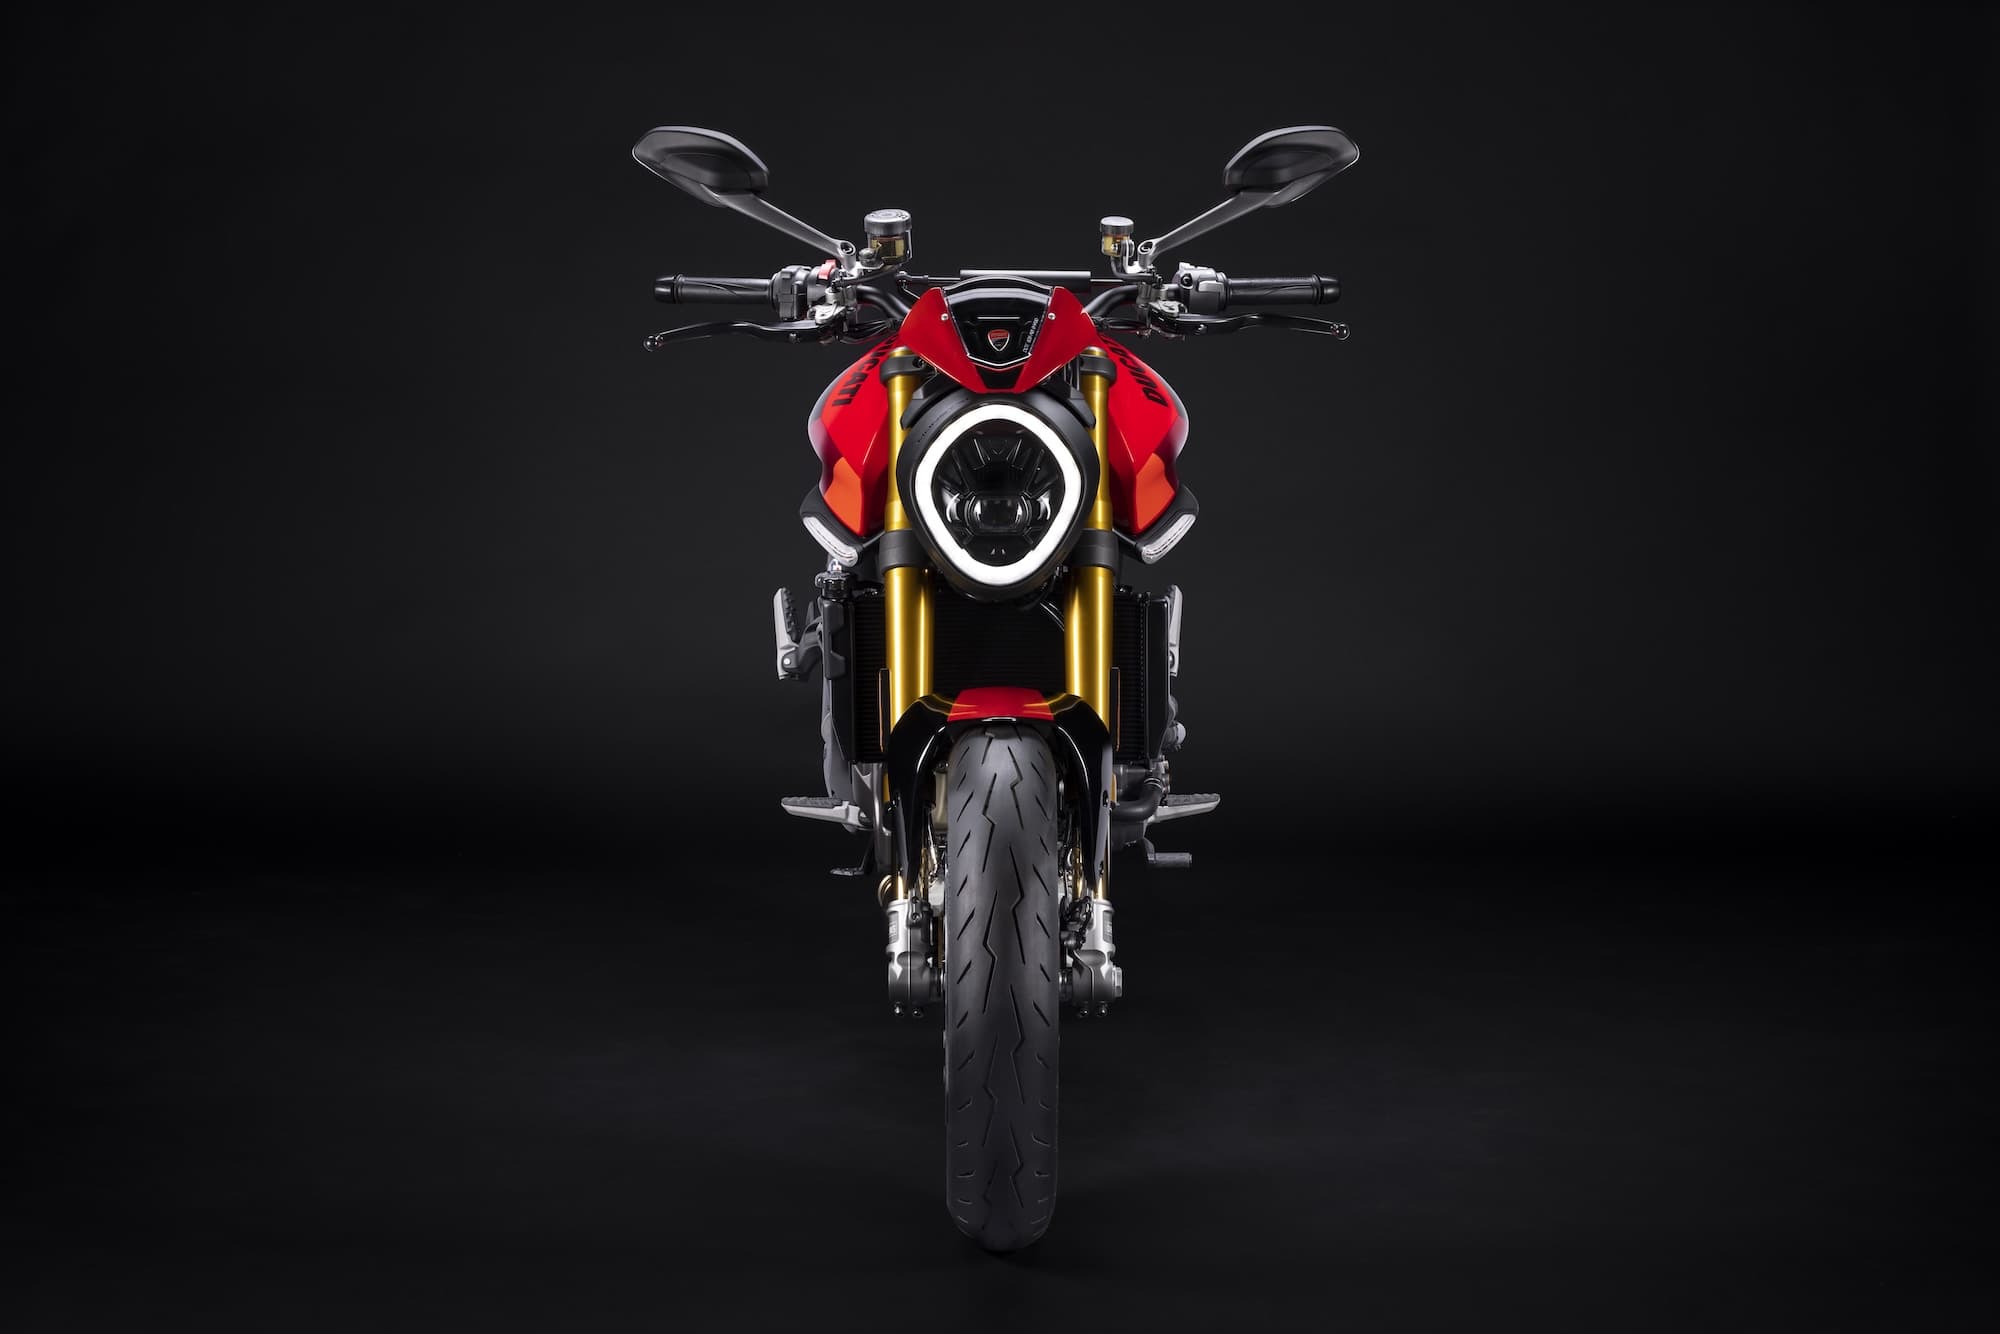 2023 Ducati Monster 937 SP Studio front